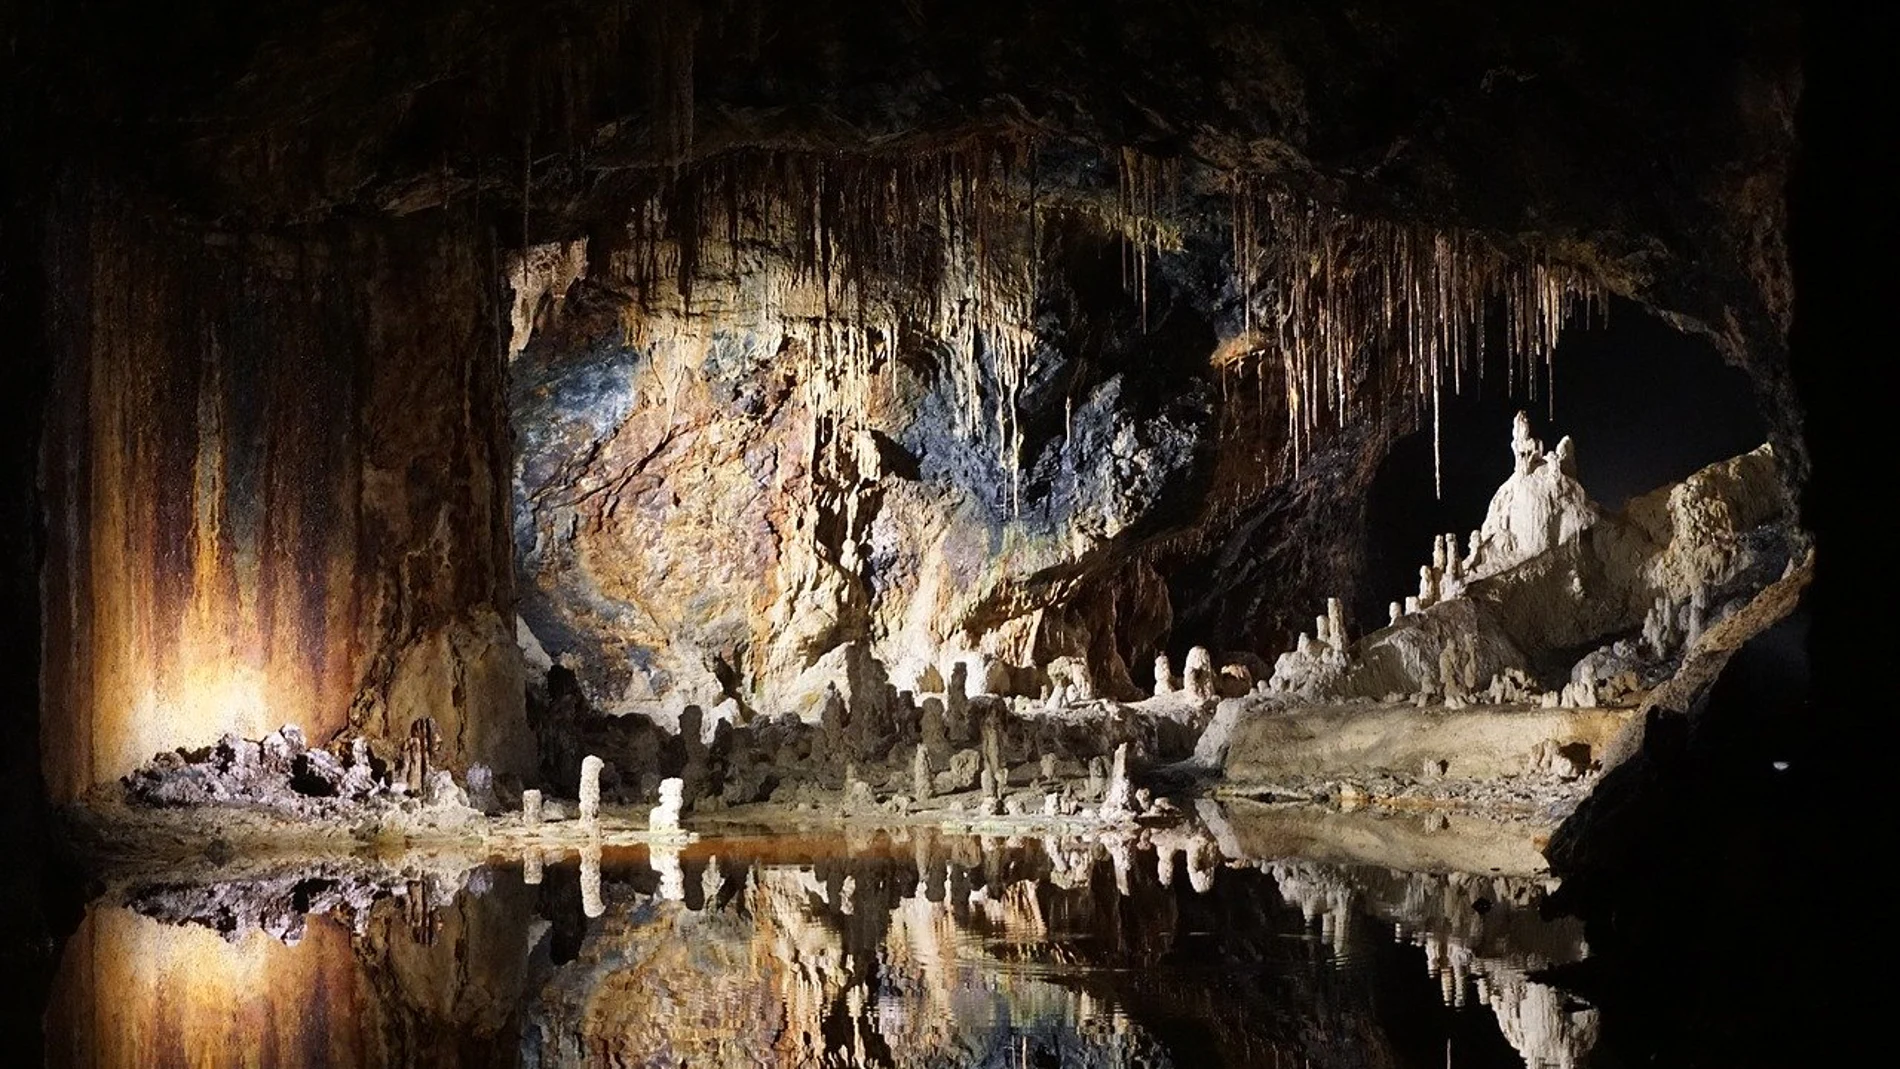 Los lagos subterráneos, uno de los elementos más impresionantes de las cuevas.